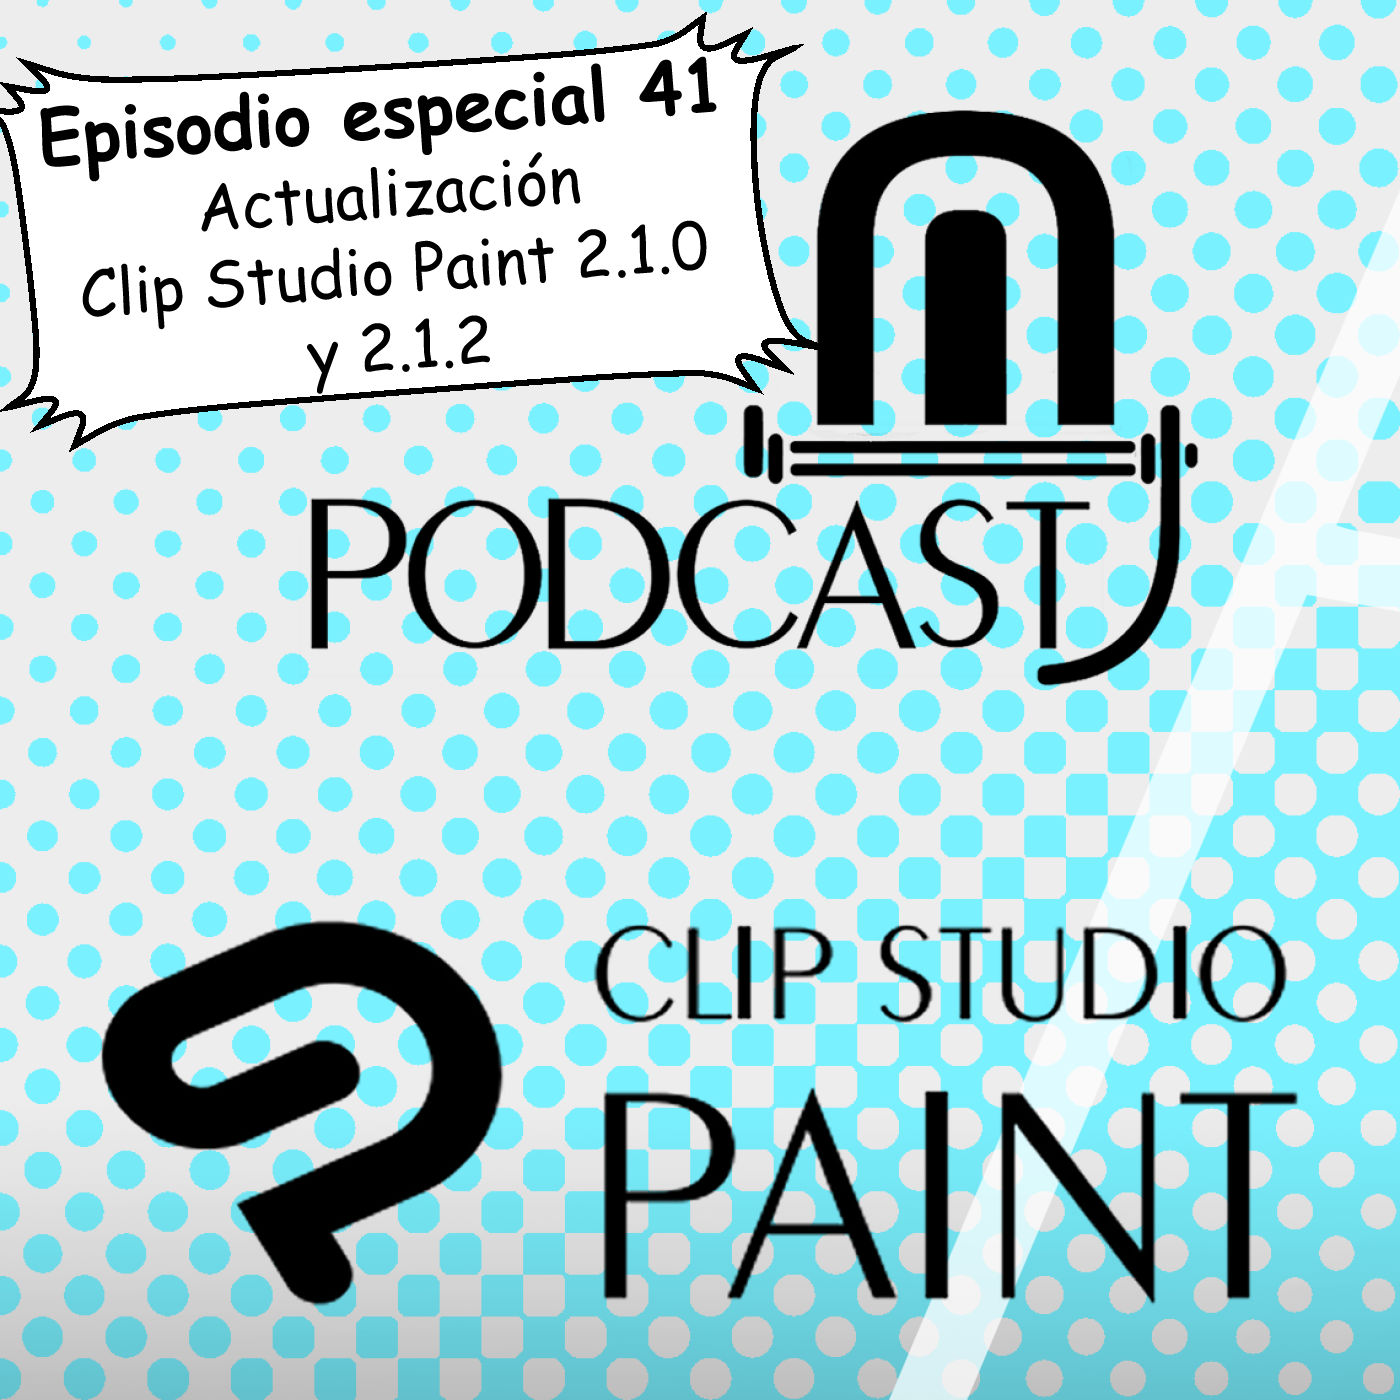 CSP especial 41. Actualización 2.1.0 y 2.1.2 de Clip Studio Paint